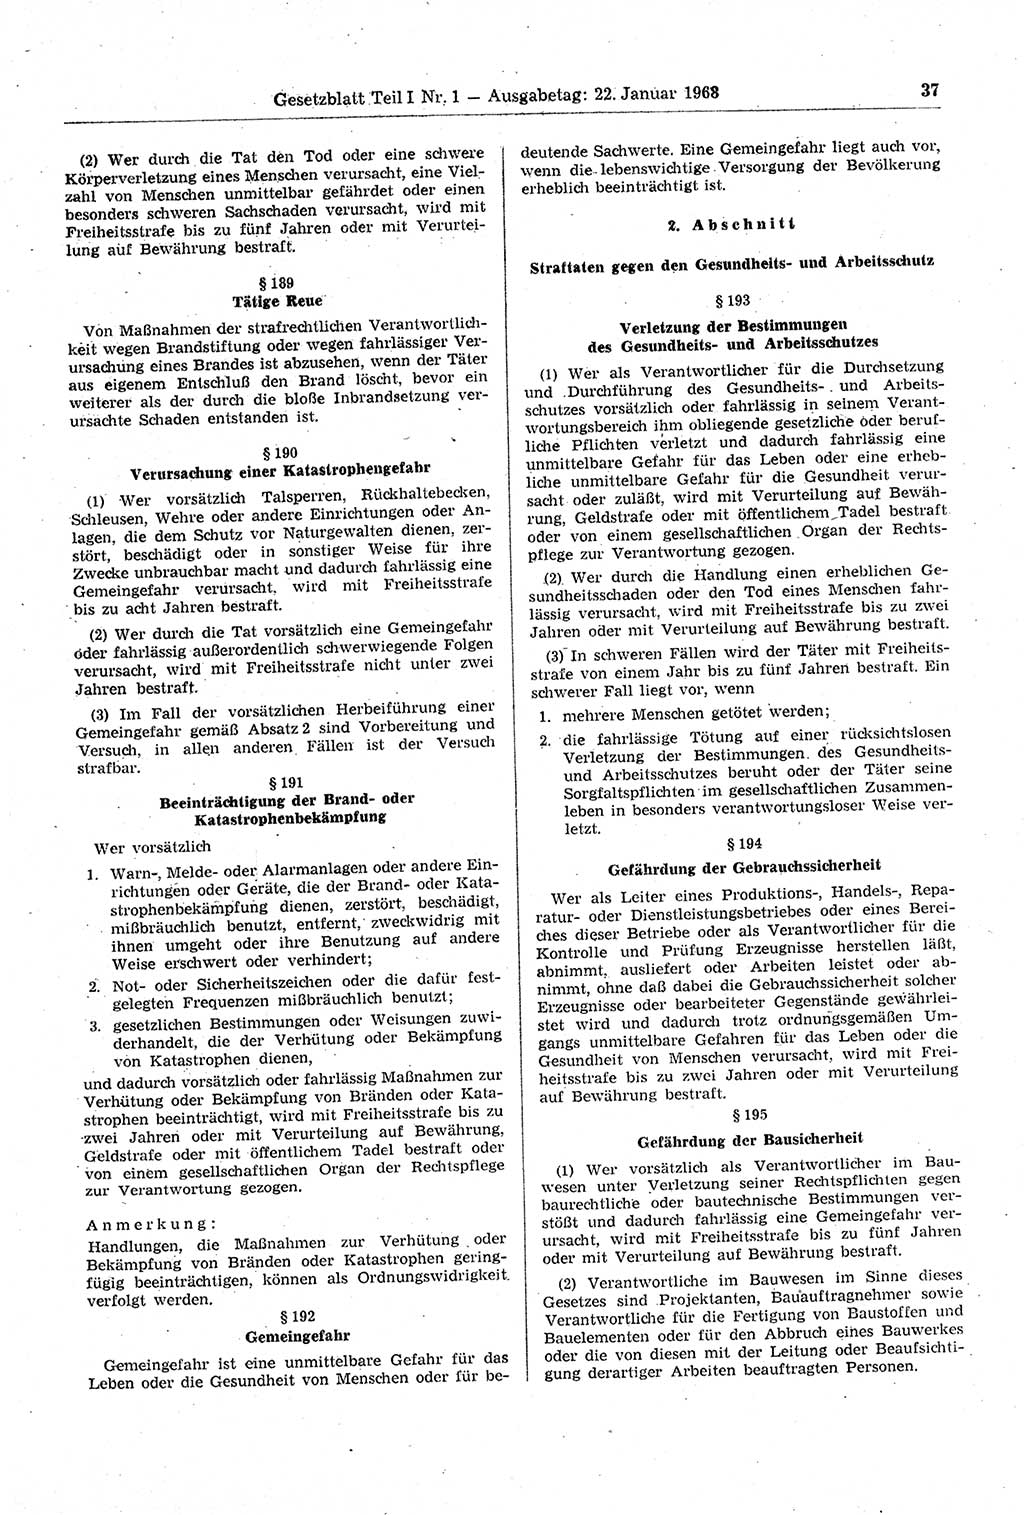 Gesetzblatt (GBl.) der Deutschen Demokratischen Republik (DDR) Teil Ⅰ 1968, Seite 37 (GBl. DDR Ⅰ 1968, S. 37)